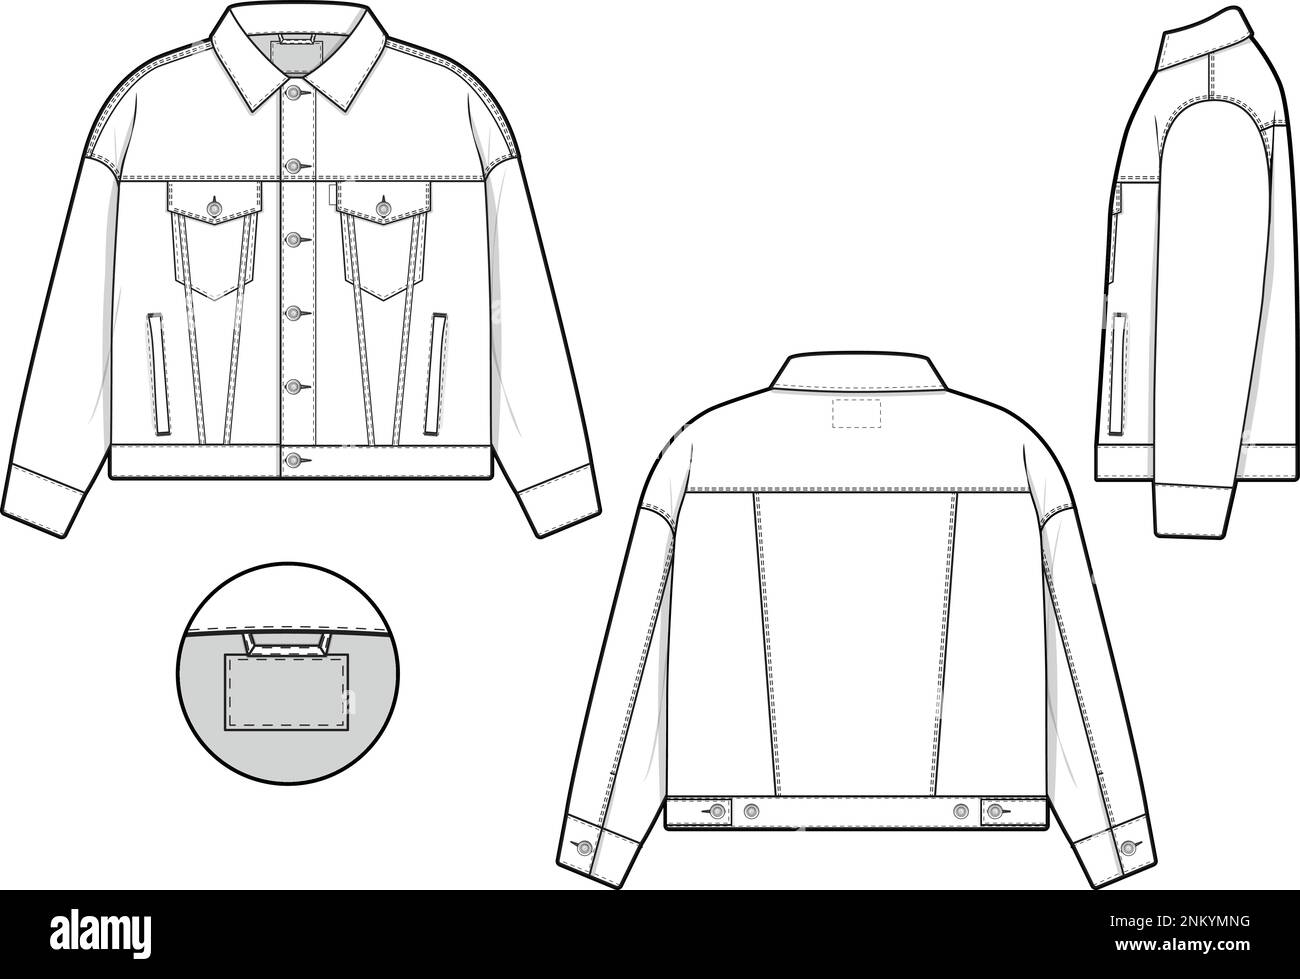 Herren Unisex übergroße Jeans Jeansjacke Trucker Vektor flach technische  Zeichnung Illustration Vorlage für Design und Tech Packs Mode CAD  Stock-Vektorgrafik - Alamy